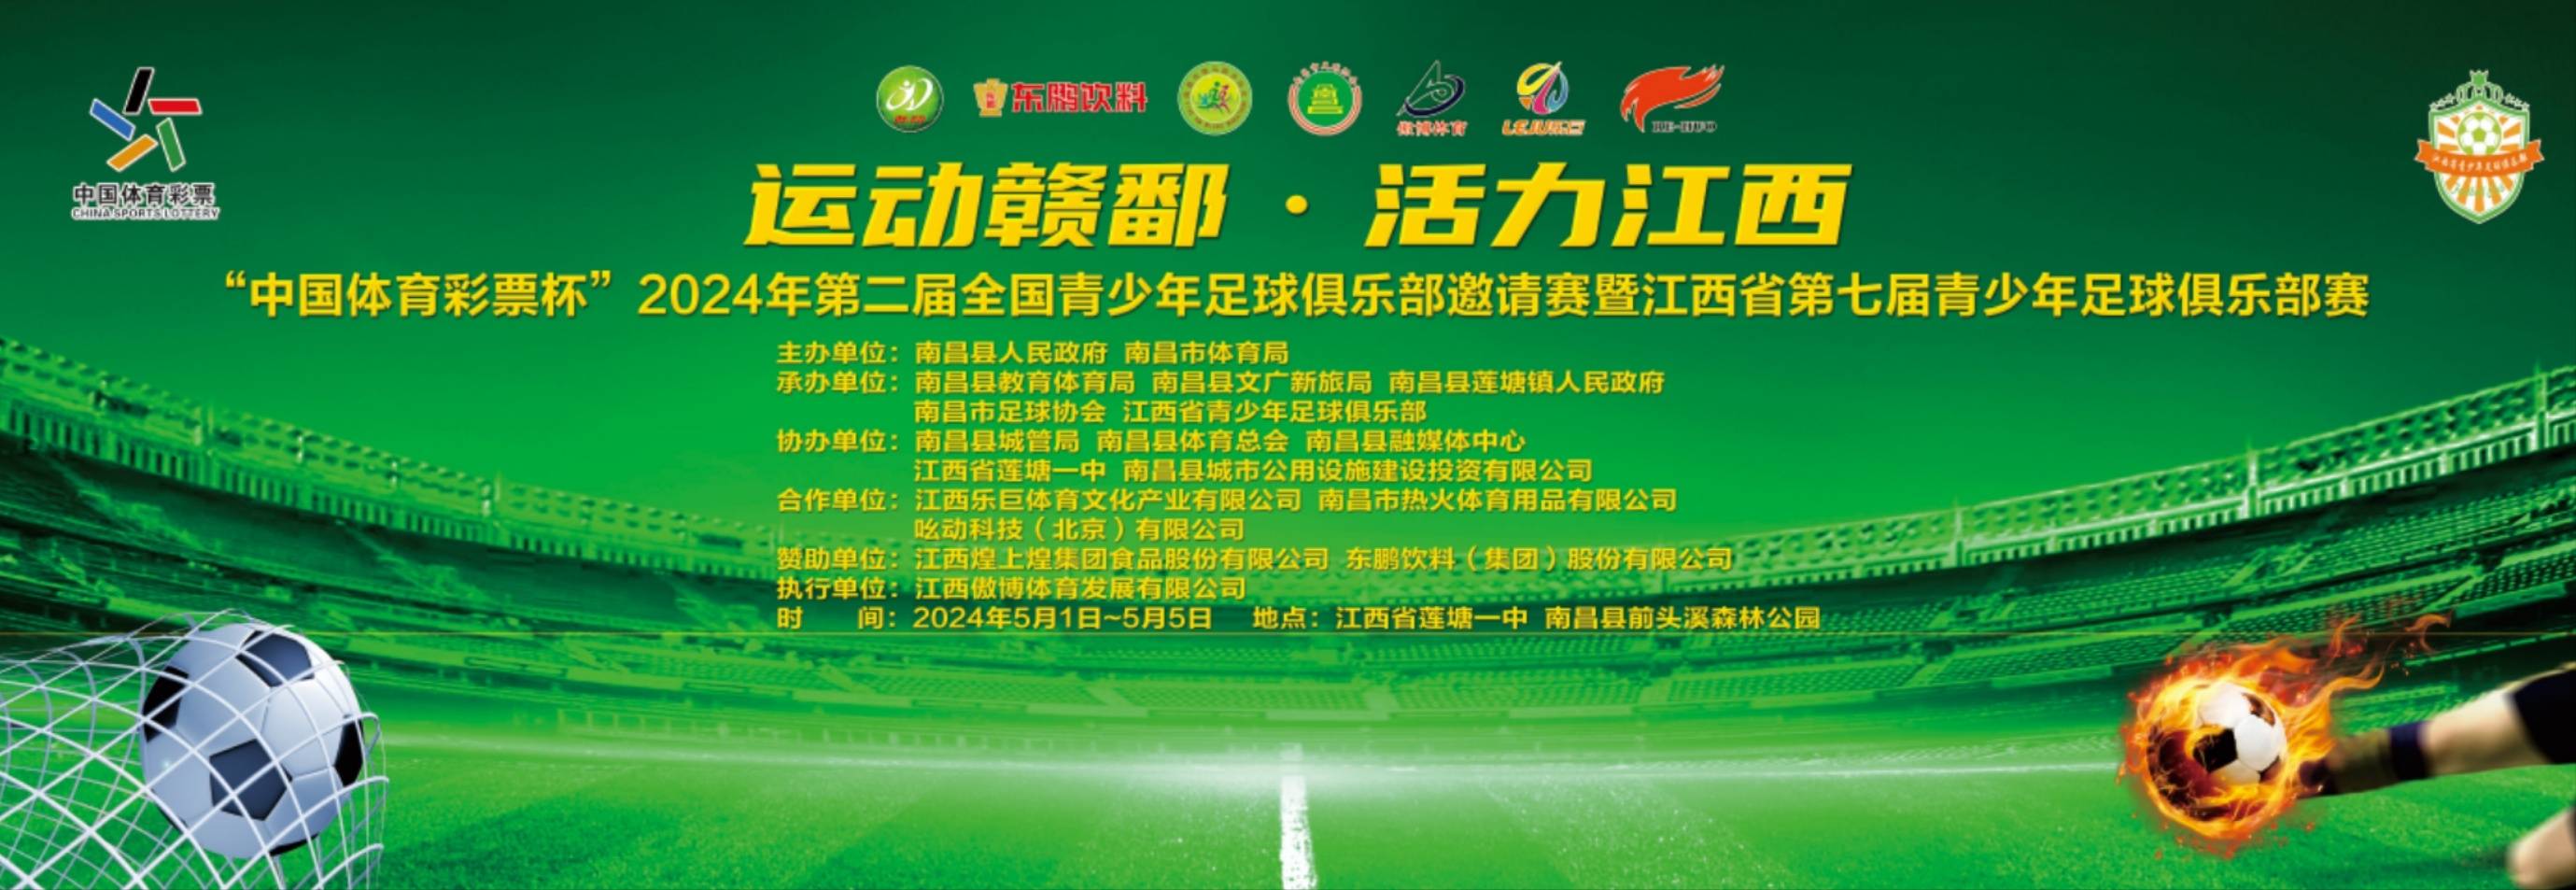 2024年第二届全国青少年足球俱乐部邀请赛在南昌县举行